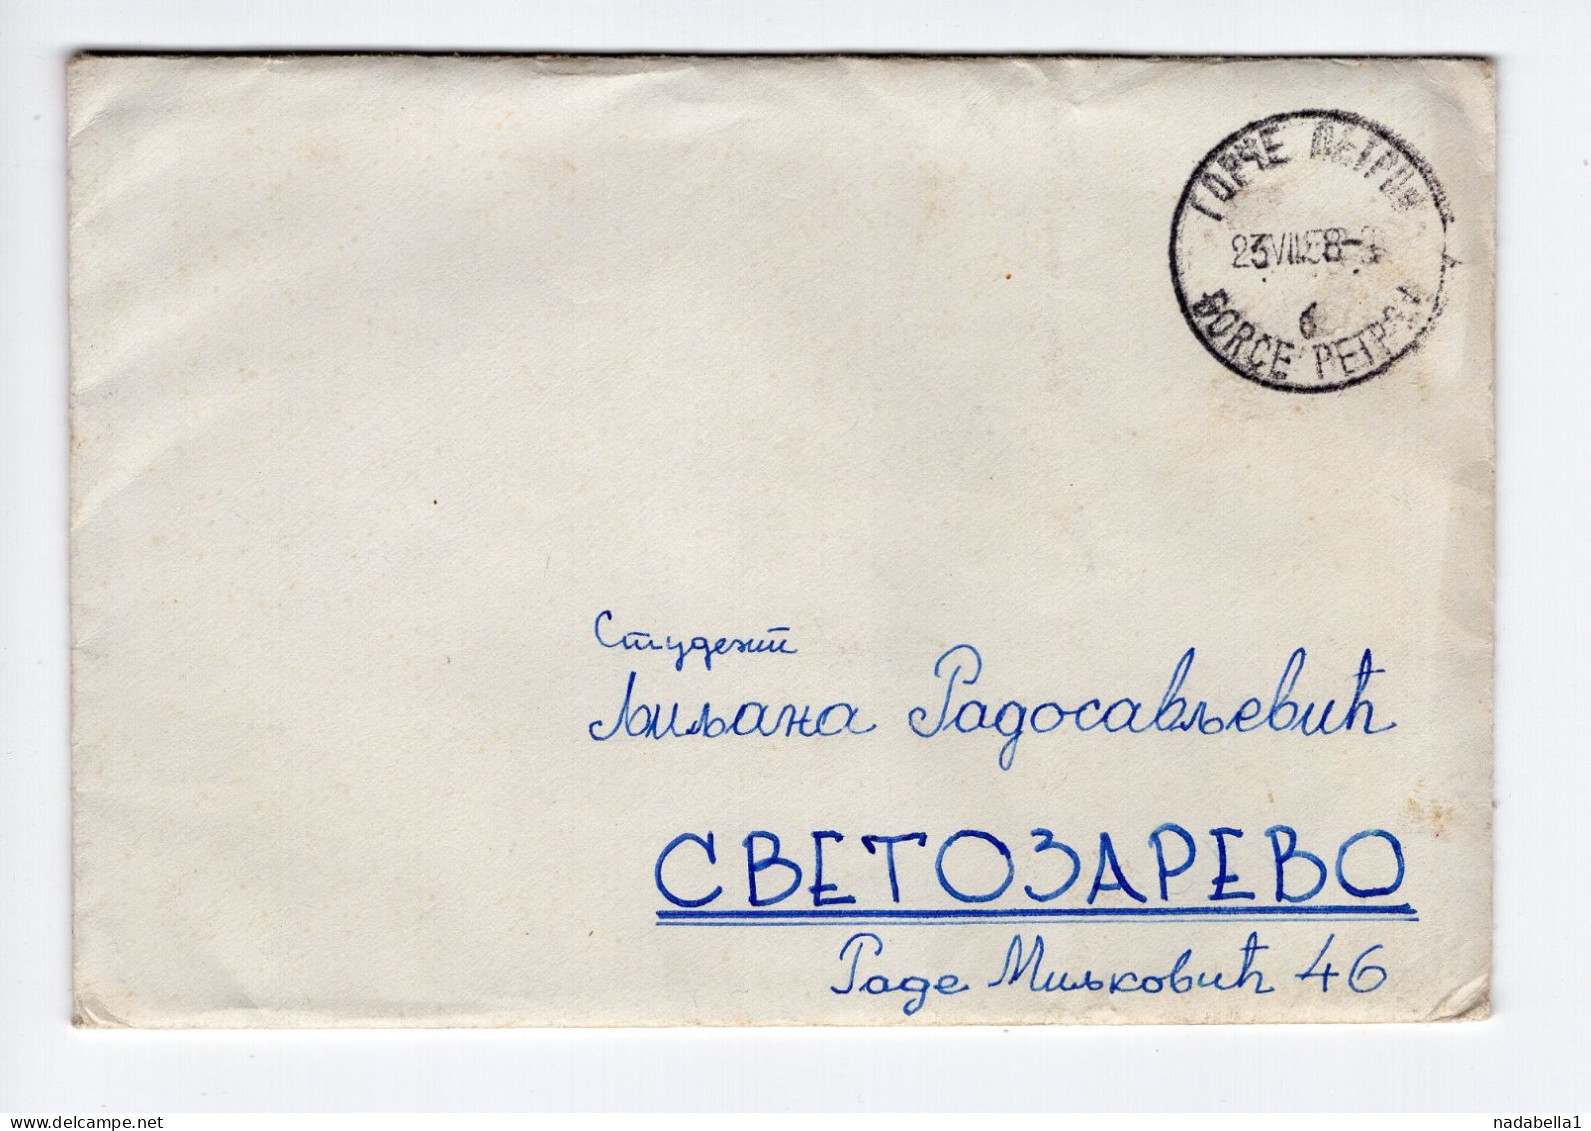 1958. YUGOSLAVIA,MACEDONIA,GORČE PETROV COVER TO SVETOZAREVO,NO STAMP,30 POSTAGE DUE APPLIED - Strafport